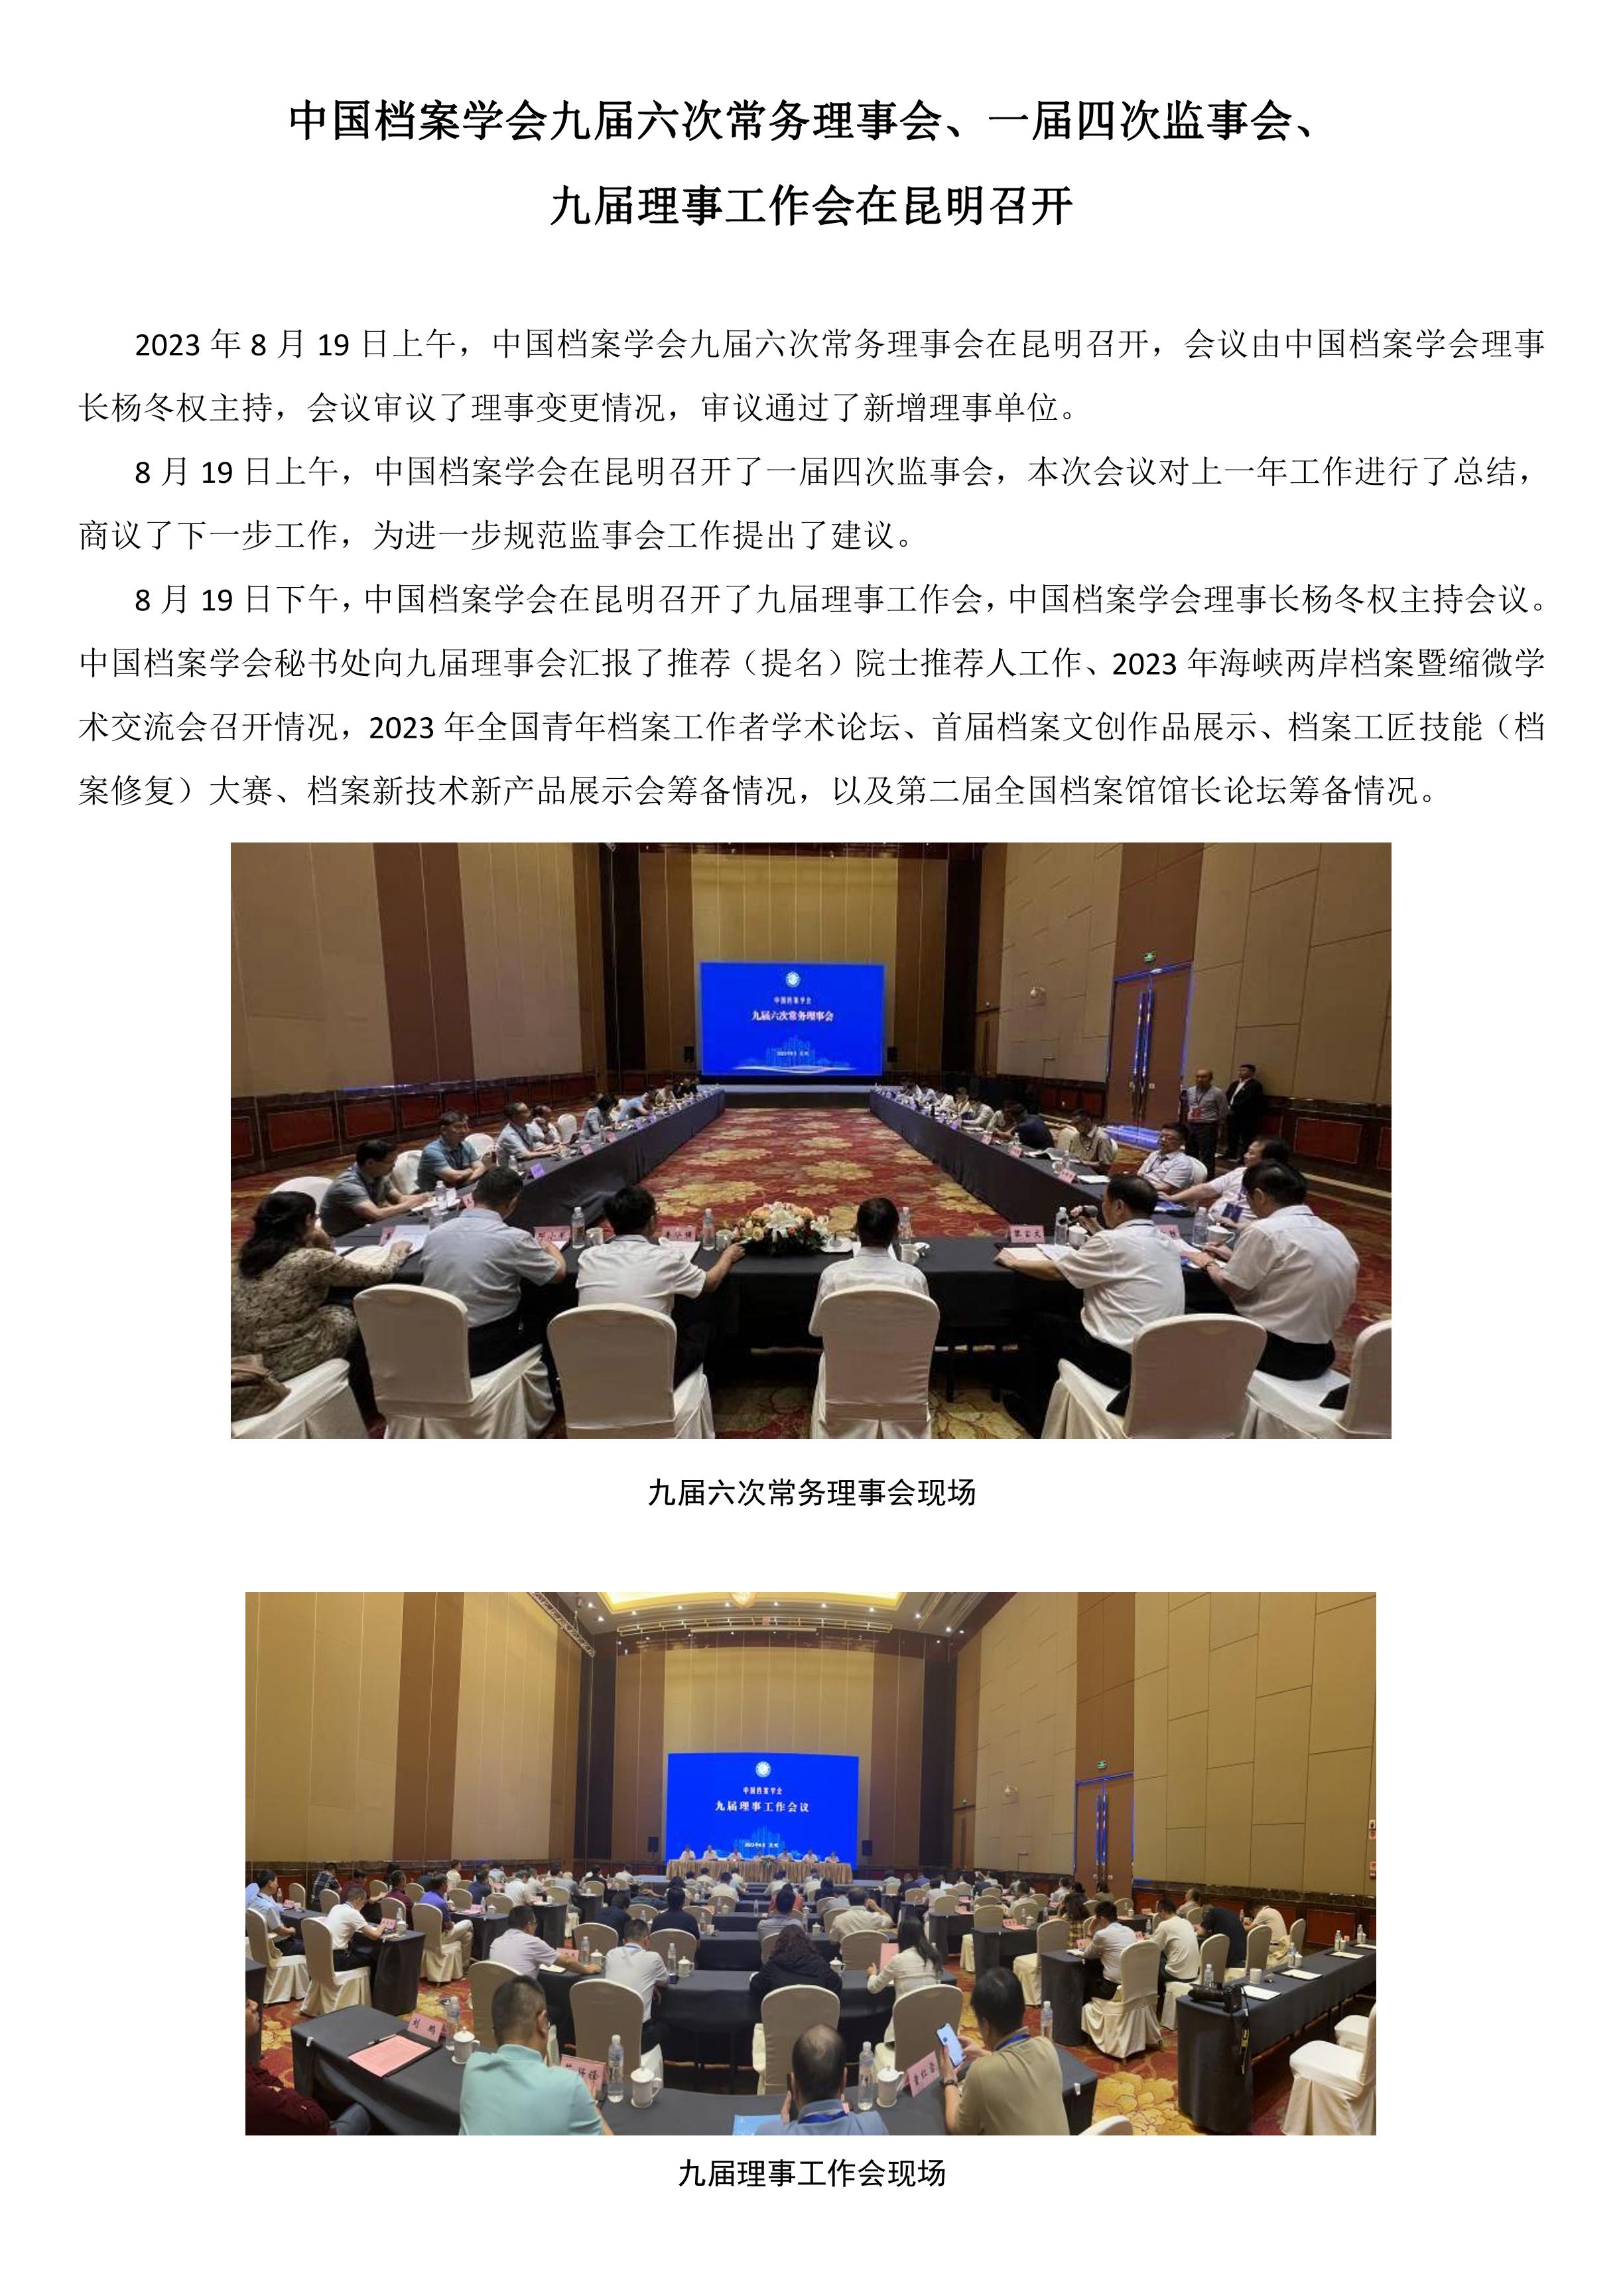 中国档案学会九届六次常务理事会、一届四次监事会、九届理事工作会在昆明召开-0